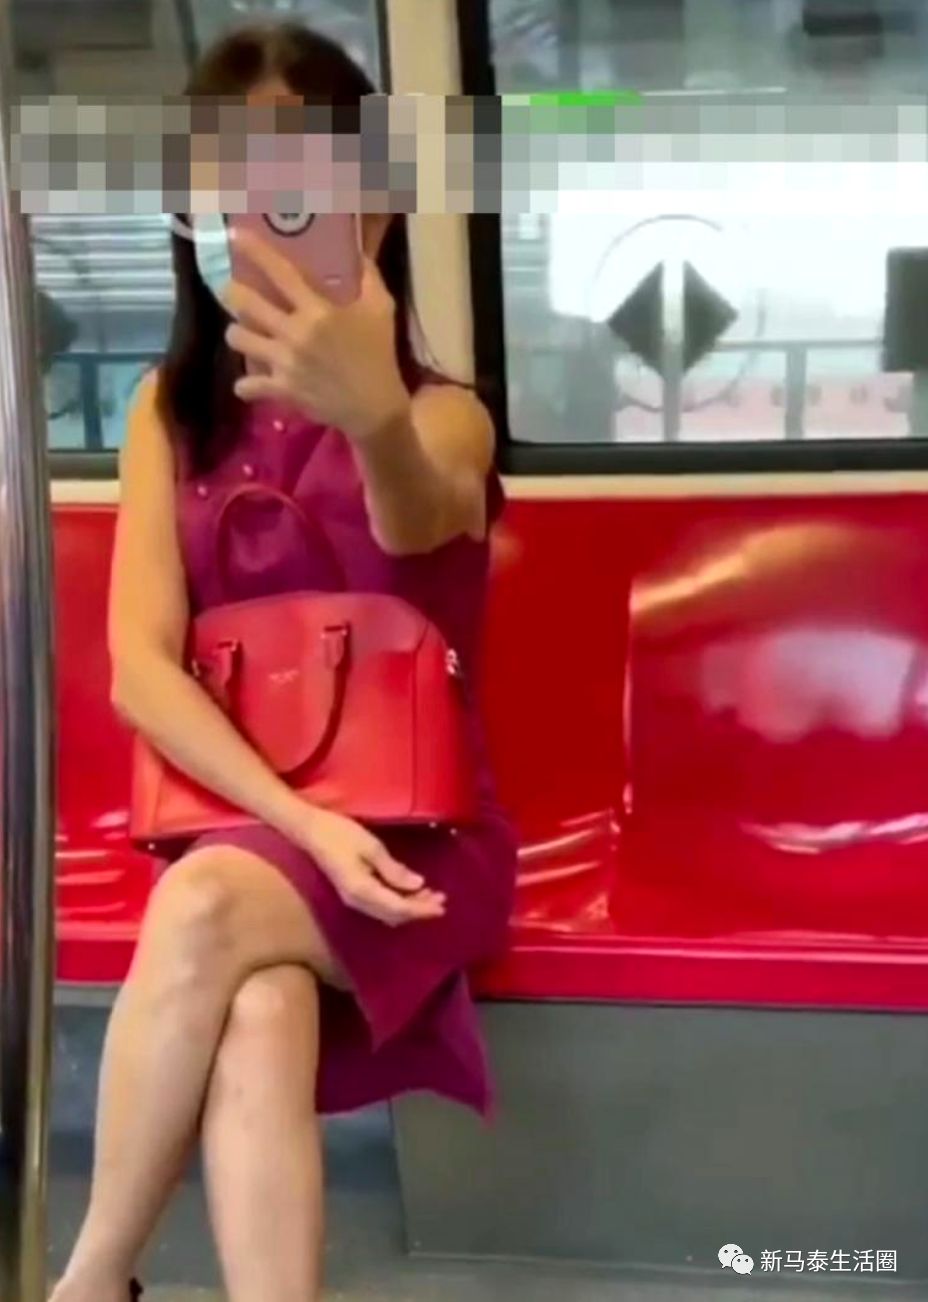 “名校女”地铁拍视频追问学历被举报